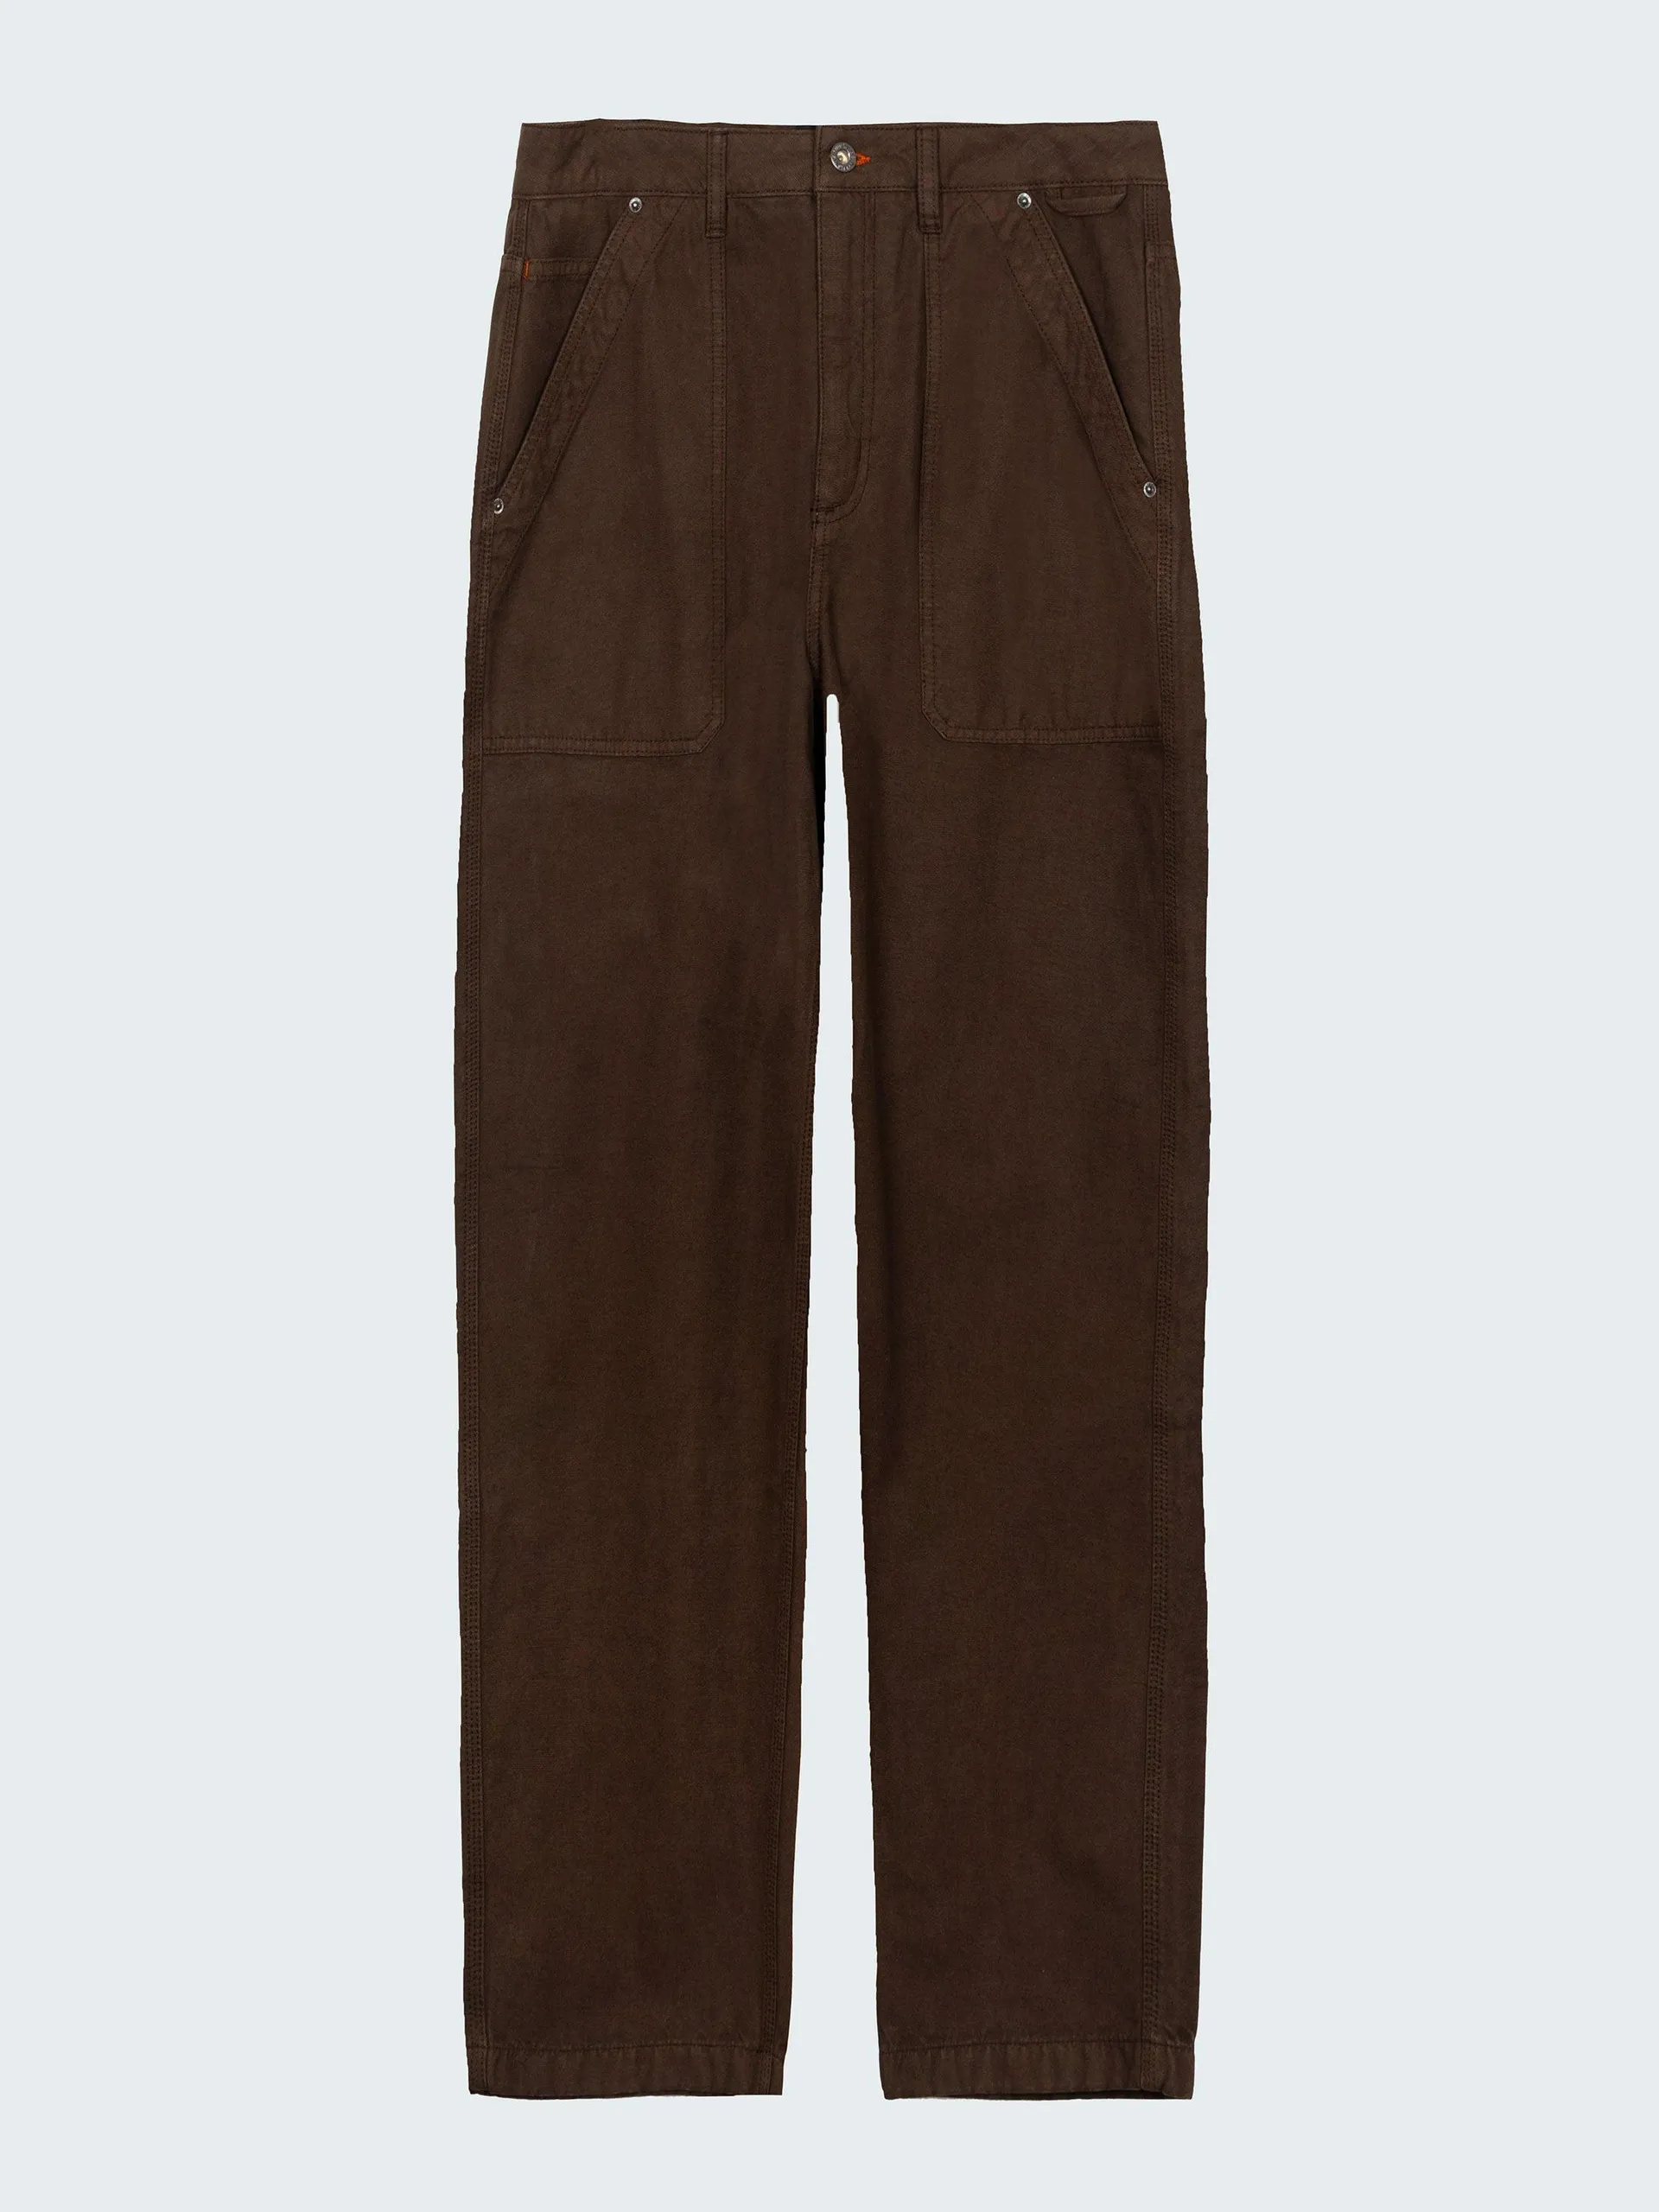 Heavyweight organic cotton workwear trouser in seal brown